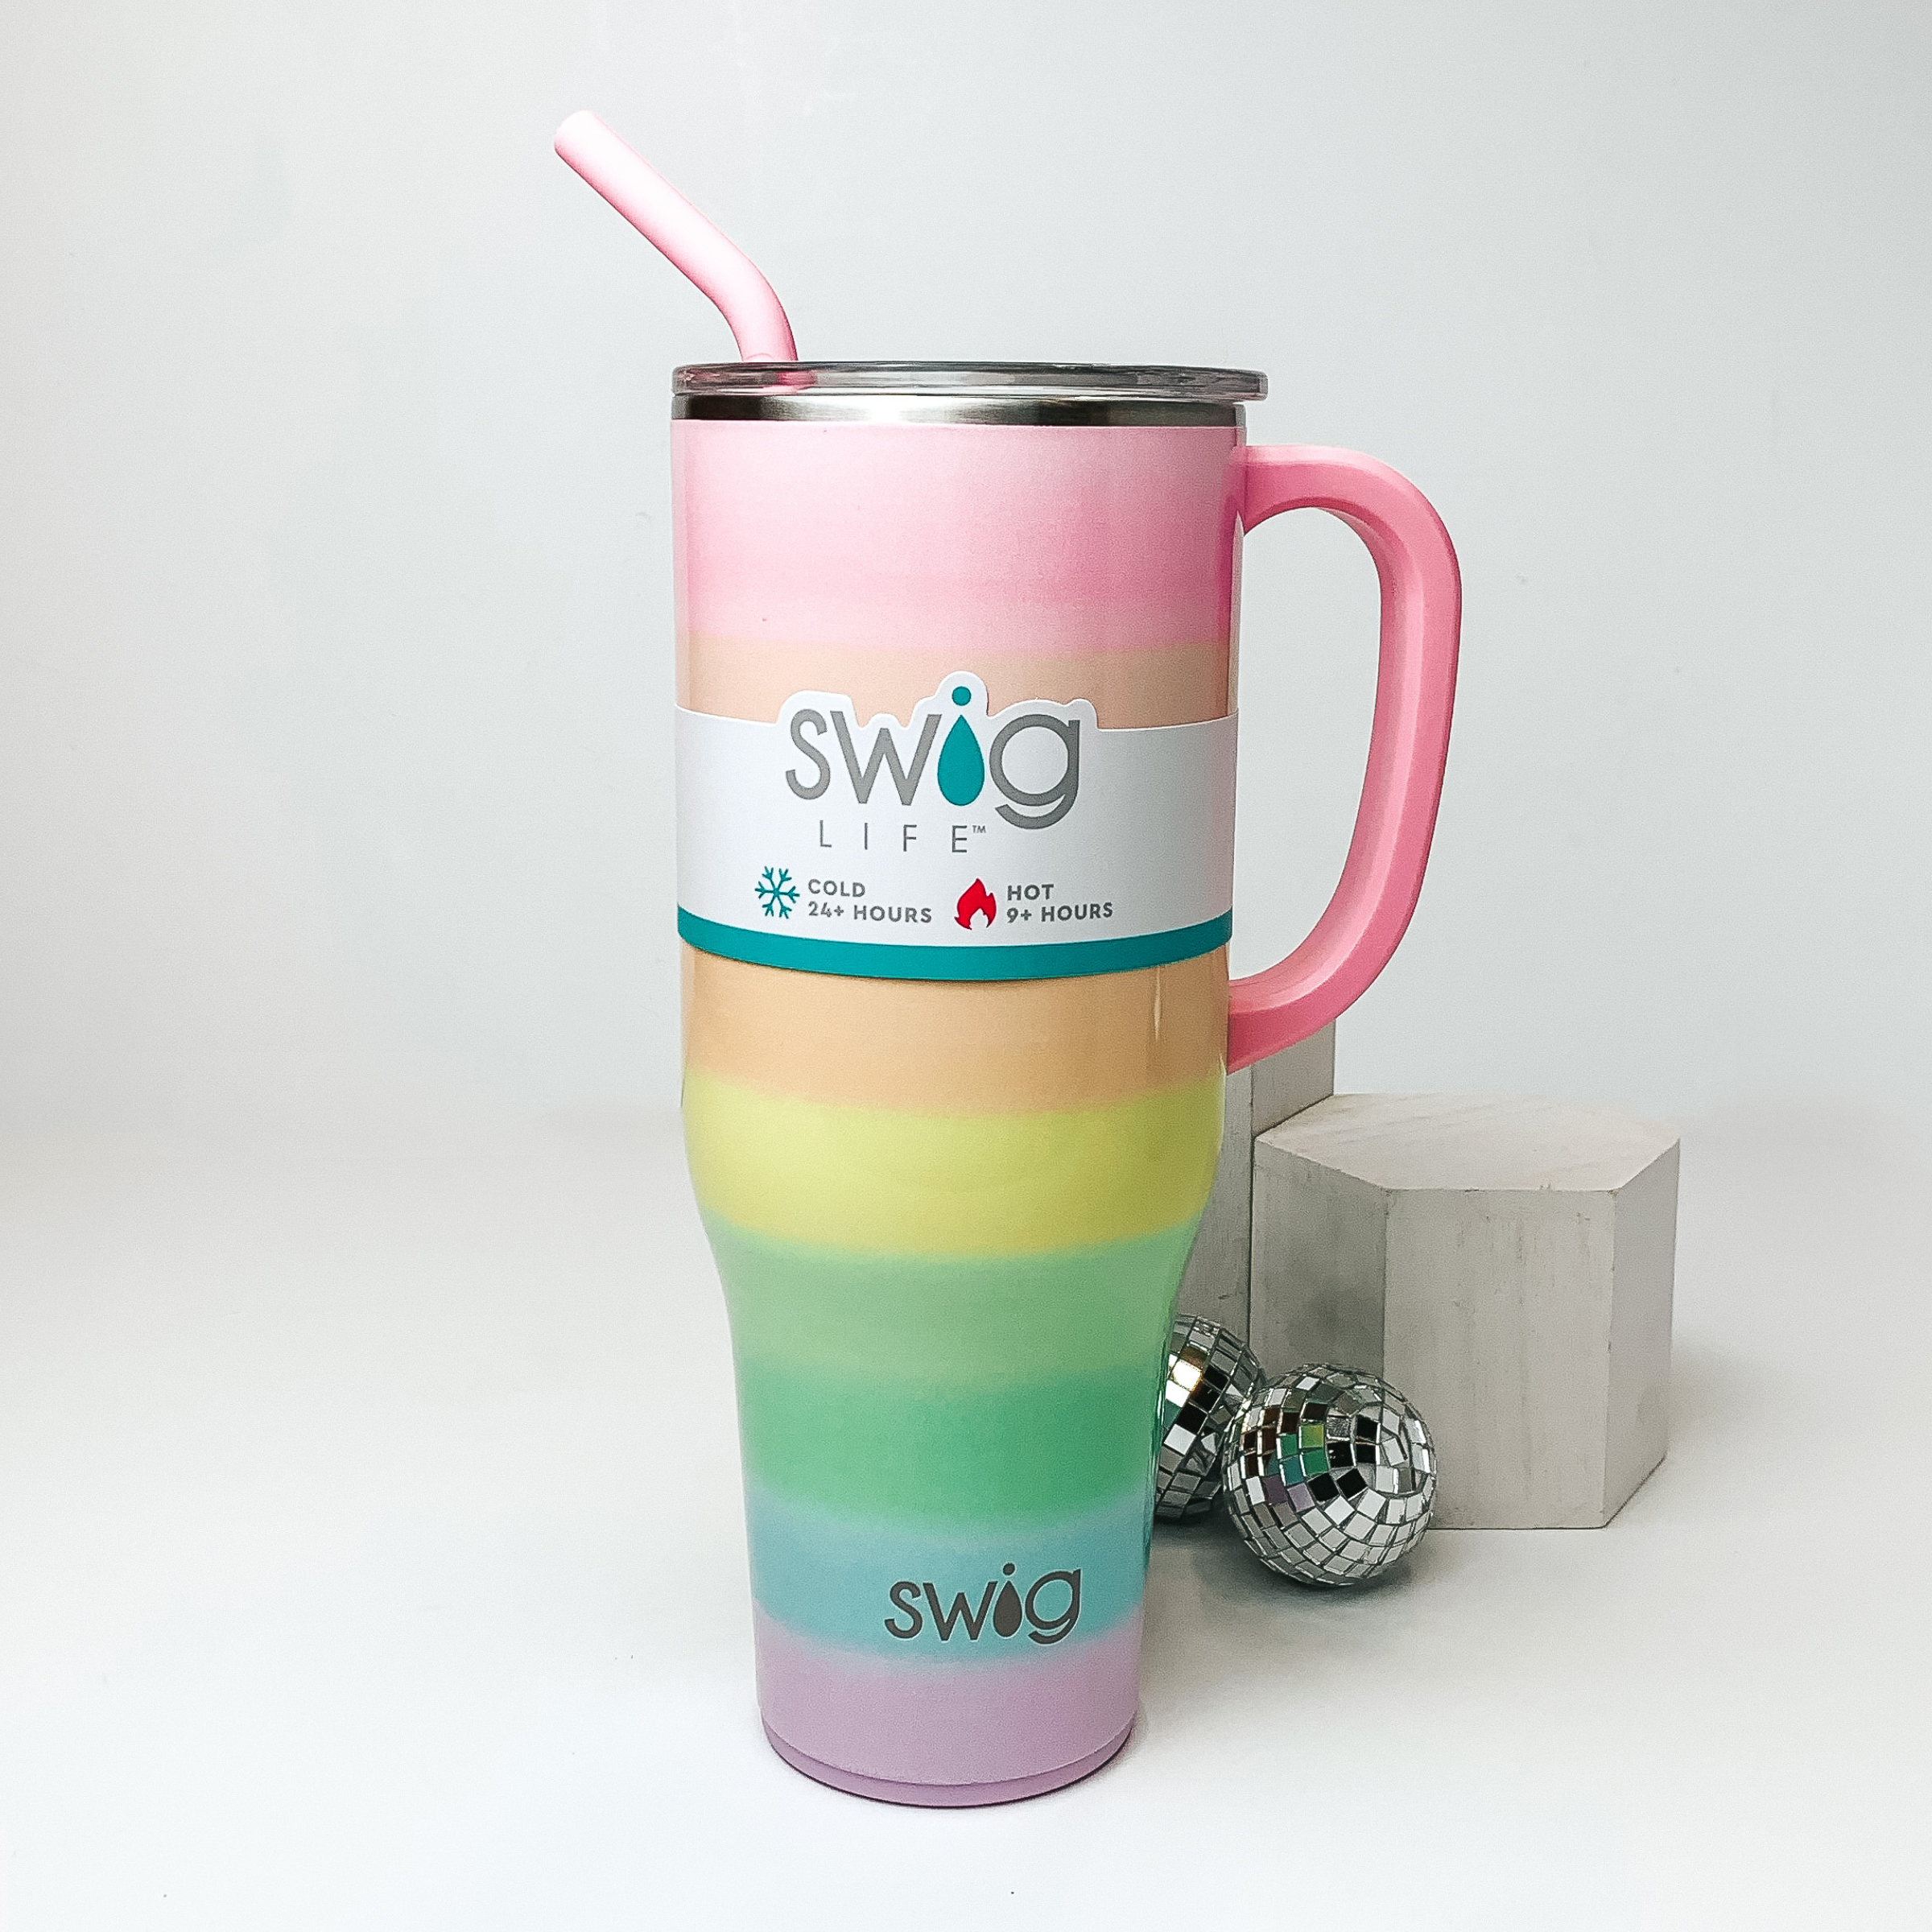 Swig Mega Mug - 40 oz Grey